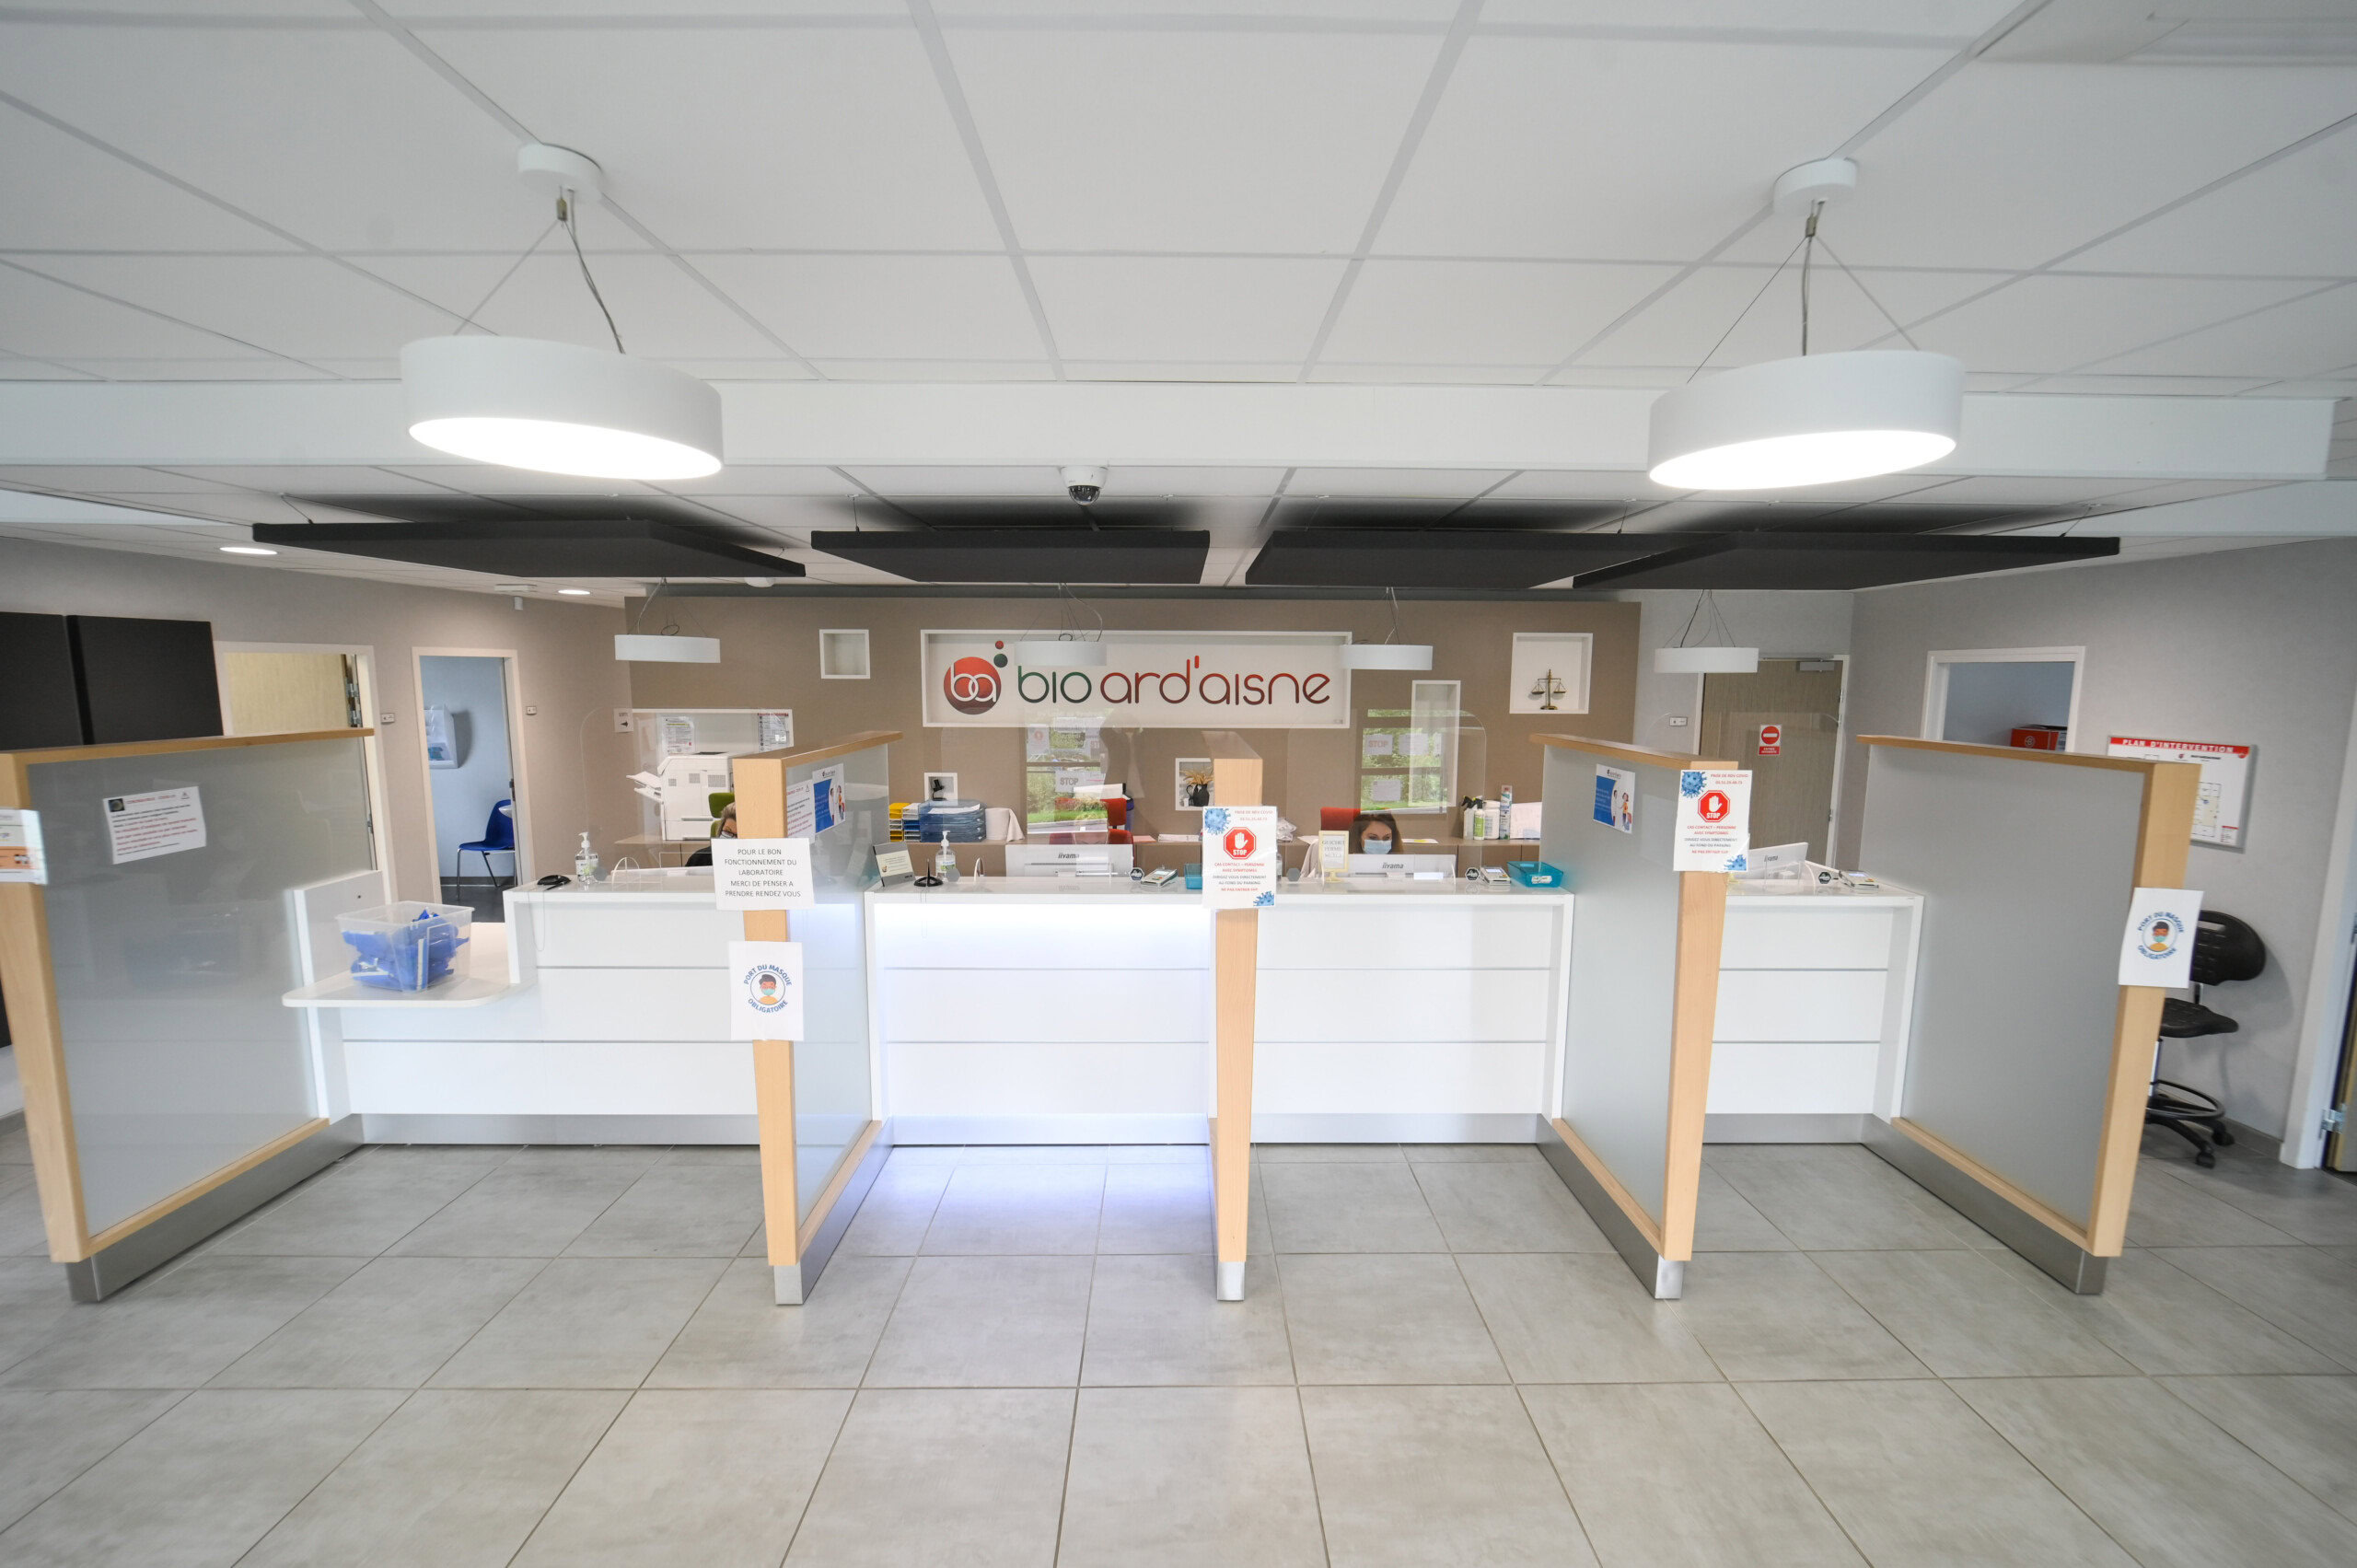 Un intérieur de pharmacie moderne avec un comptoir blanc, des écrans de protection et une signalétique favorisant la santé et le bien-être au Laboratoire Balan Bio Ard'Aisne.